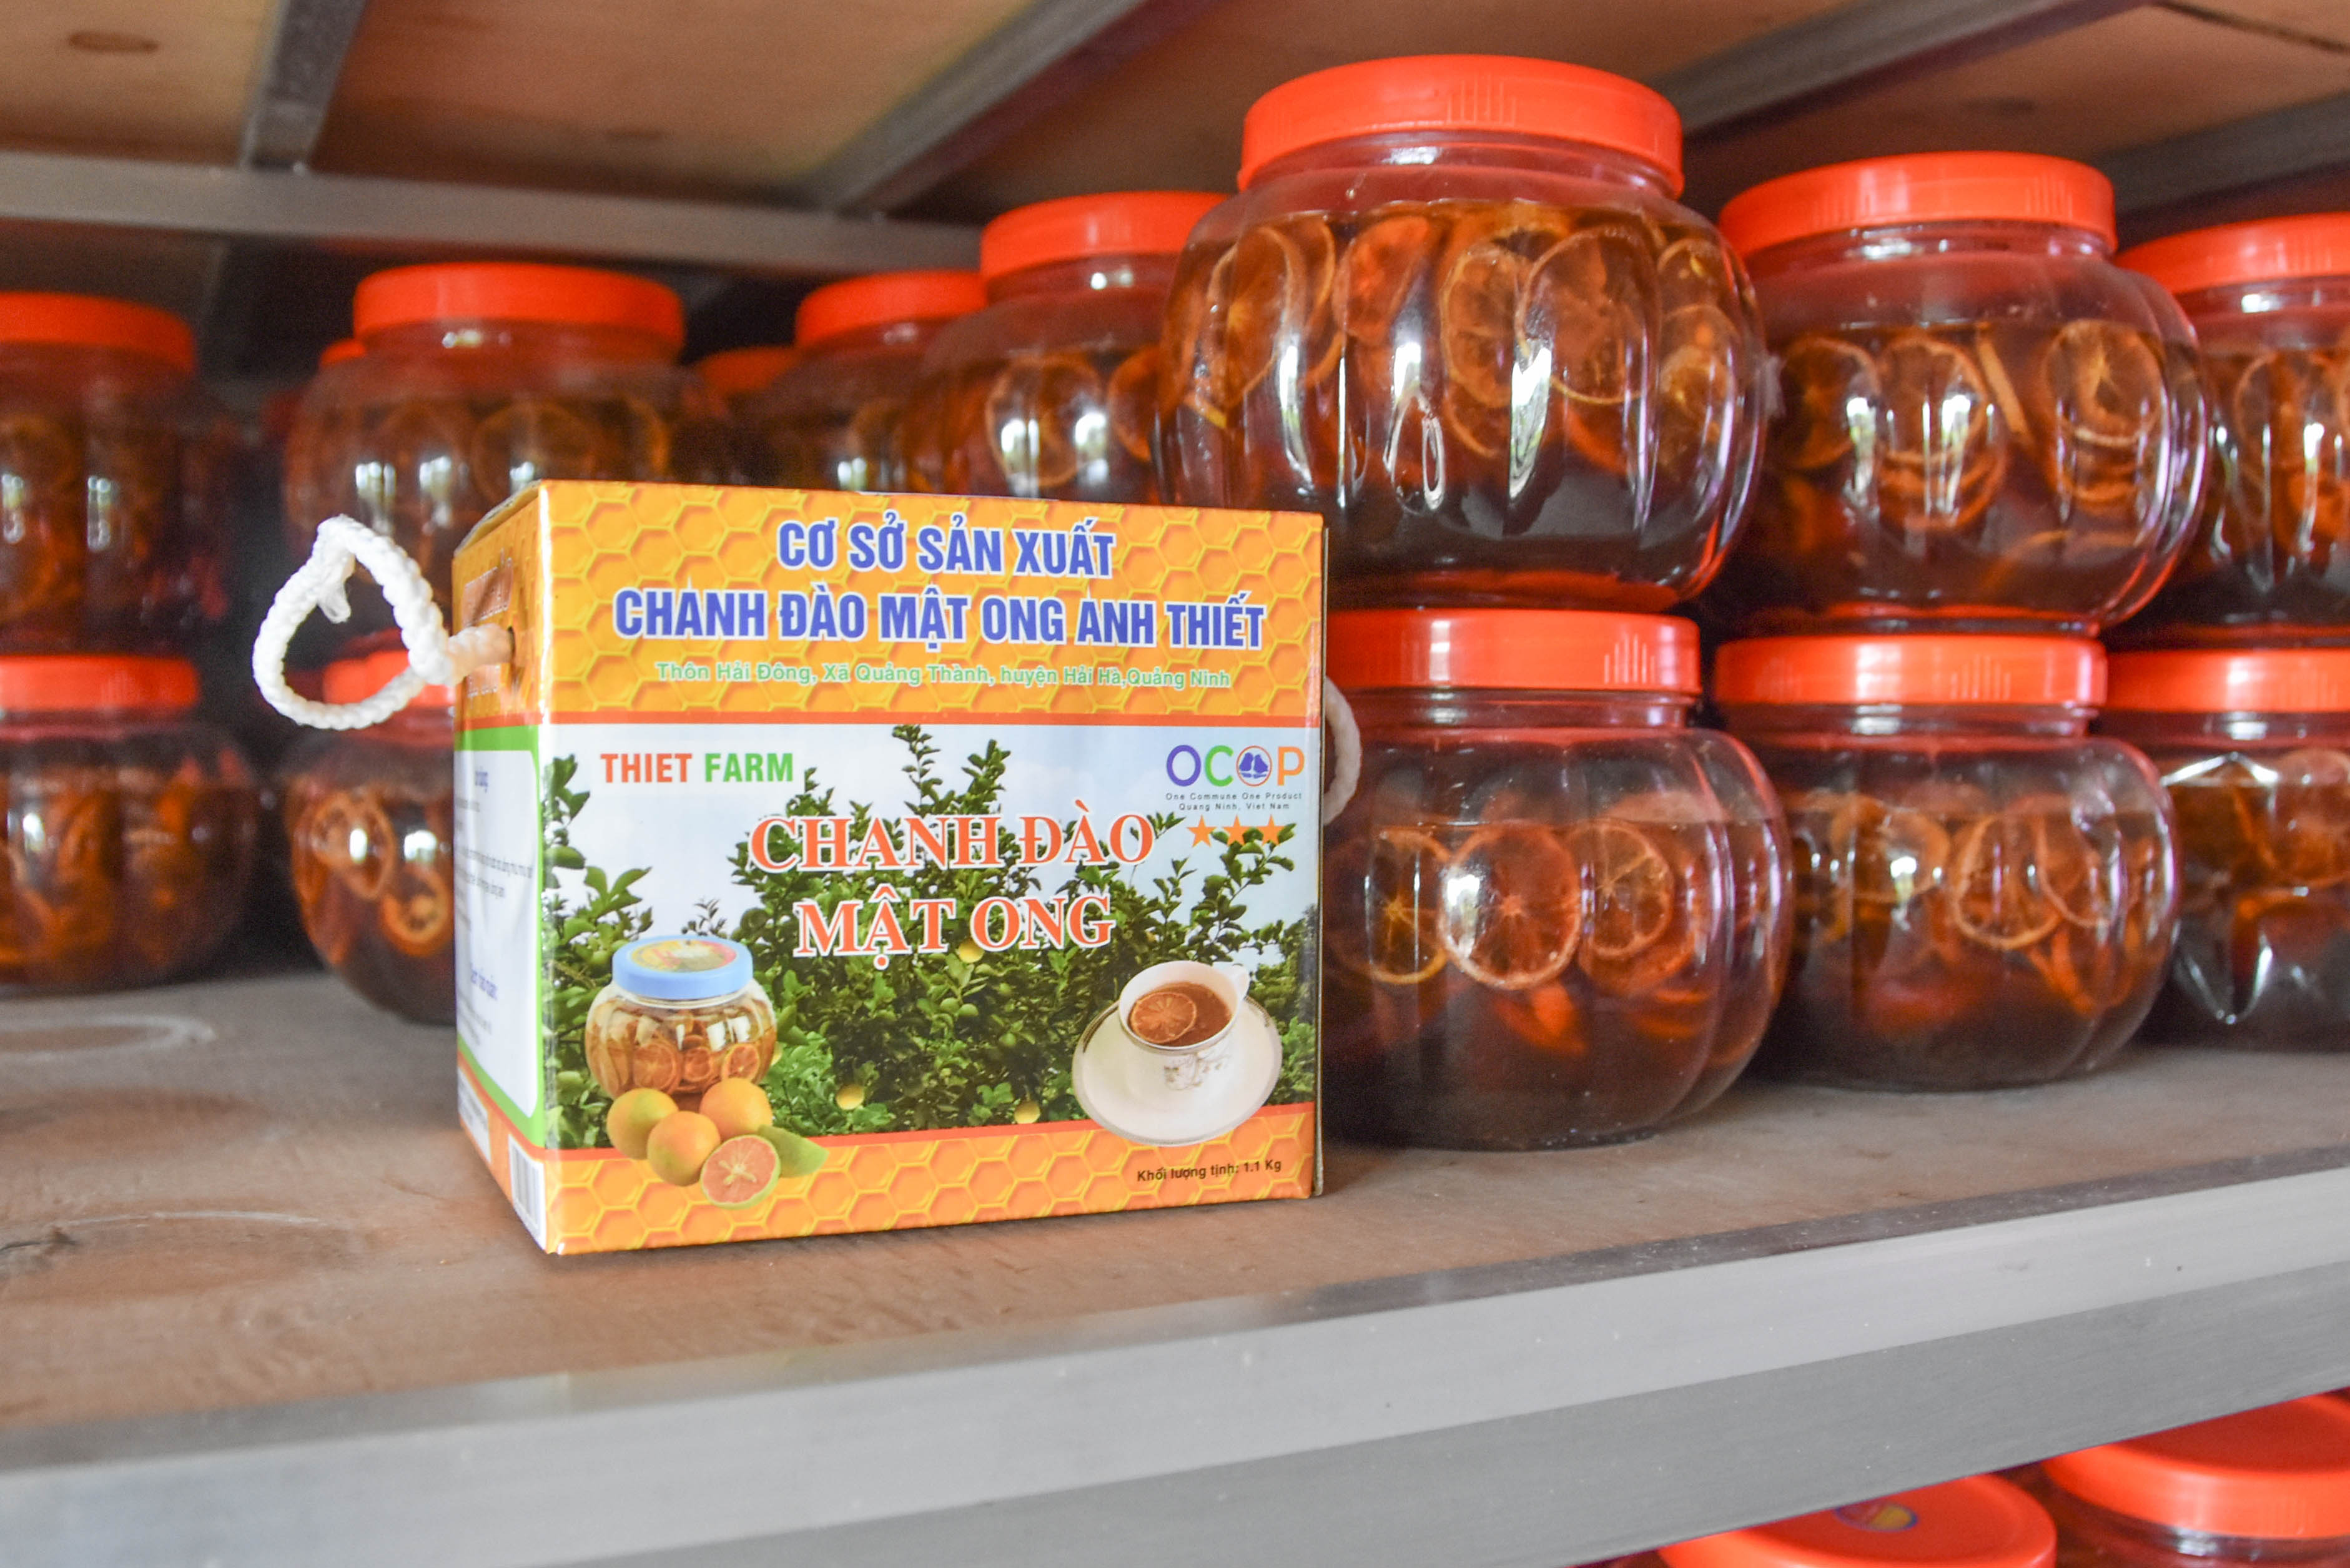 Chanh đào mật ong là một trong những sản phẩm OCOP nổi bật của huyện Hải Hà.